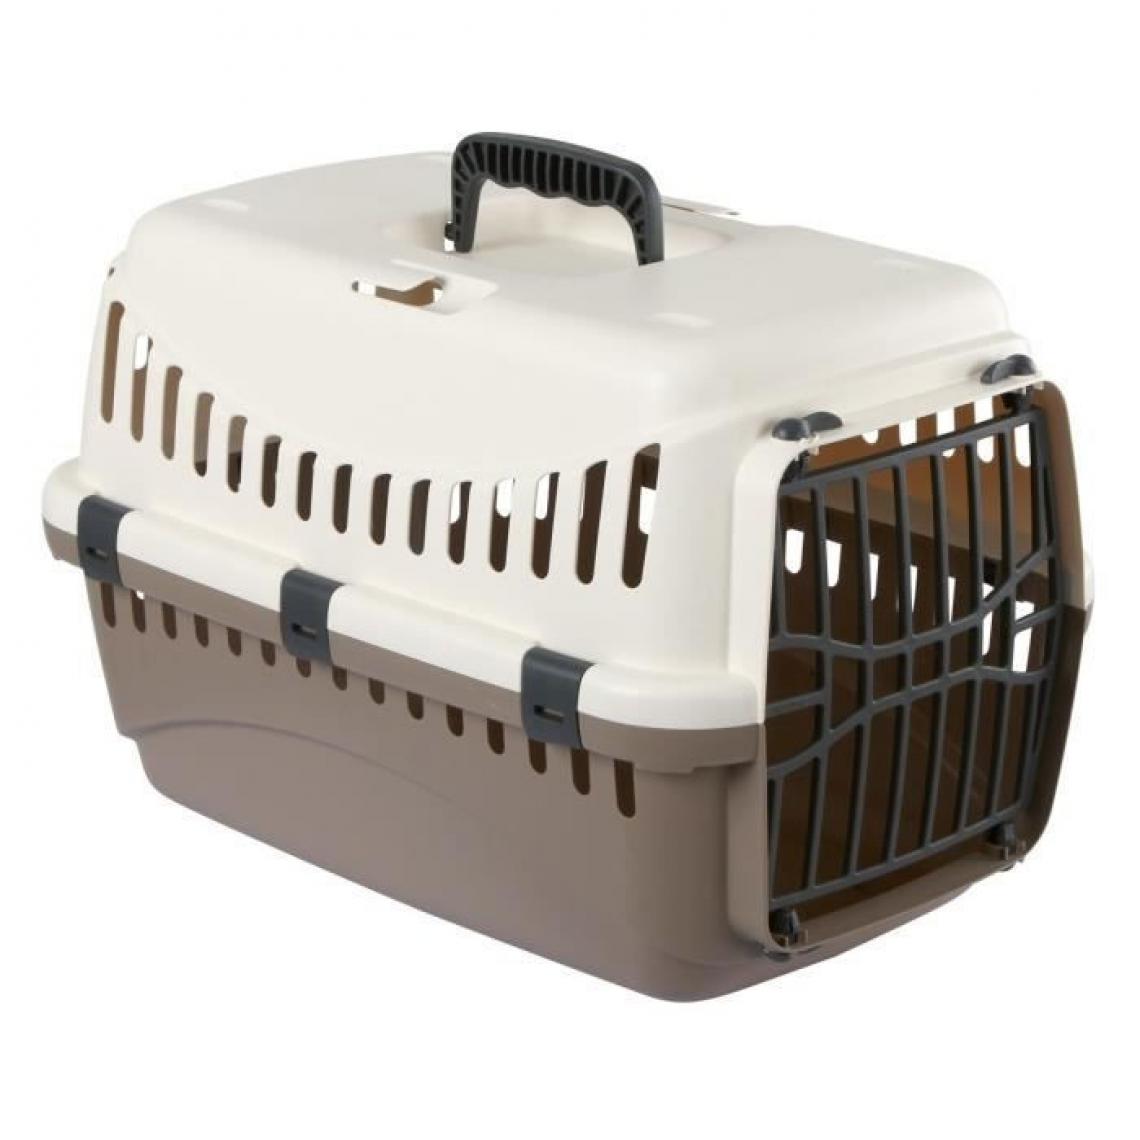 Kerbl - KERBL Box de transport Expedition pour chien - 48x32x32cm - Creme et taupe - Equipement de transport pour chat